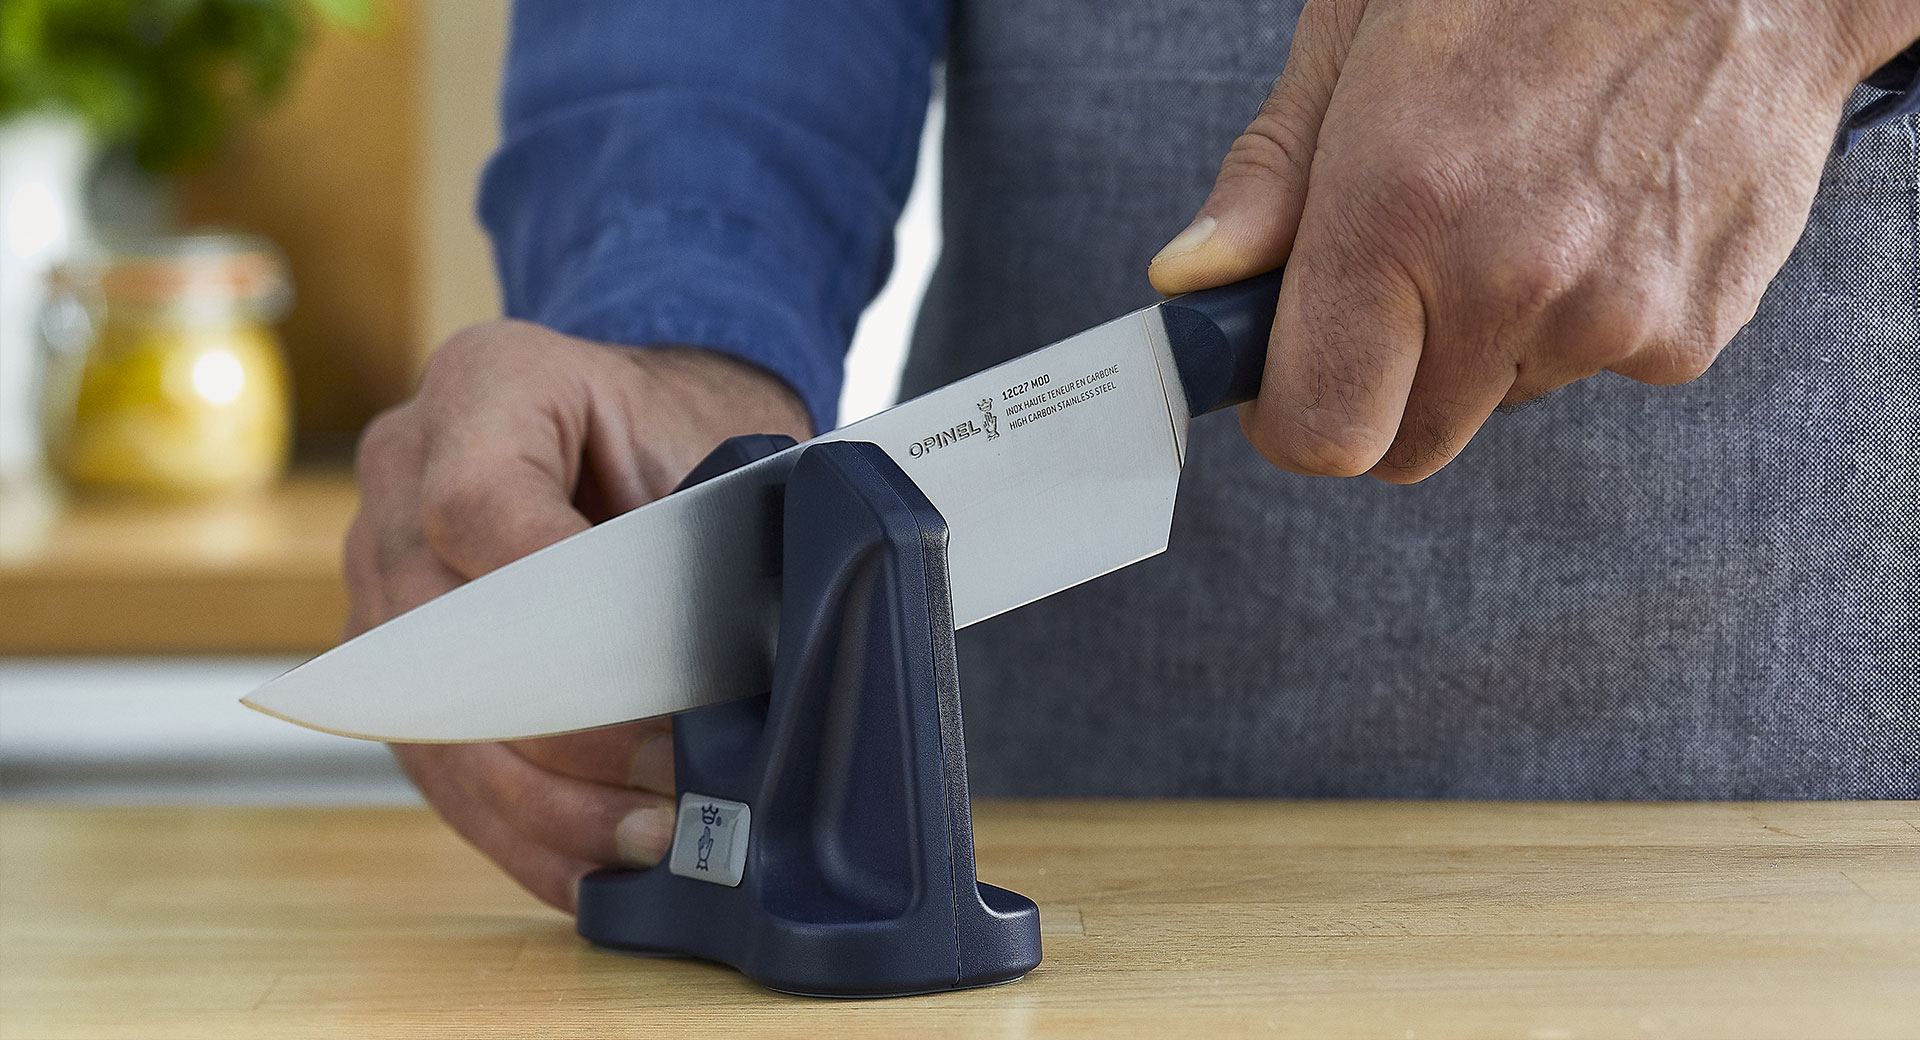 El truco para afilar cuchillos de manera fácil y rápida